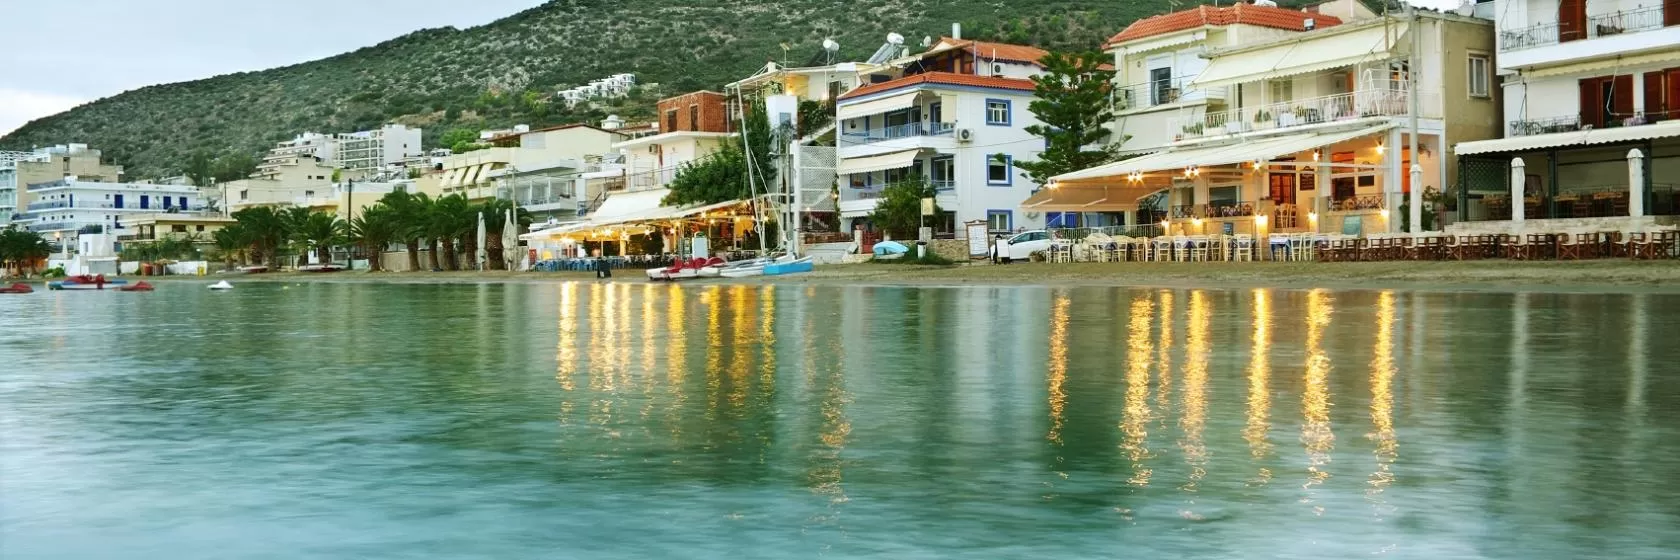 Tolon, Peloponnese Hotels